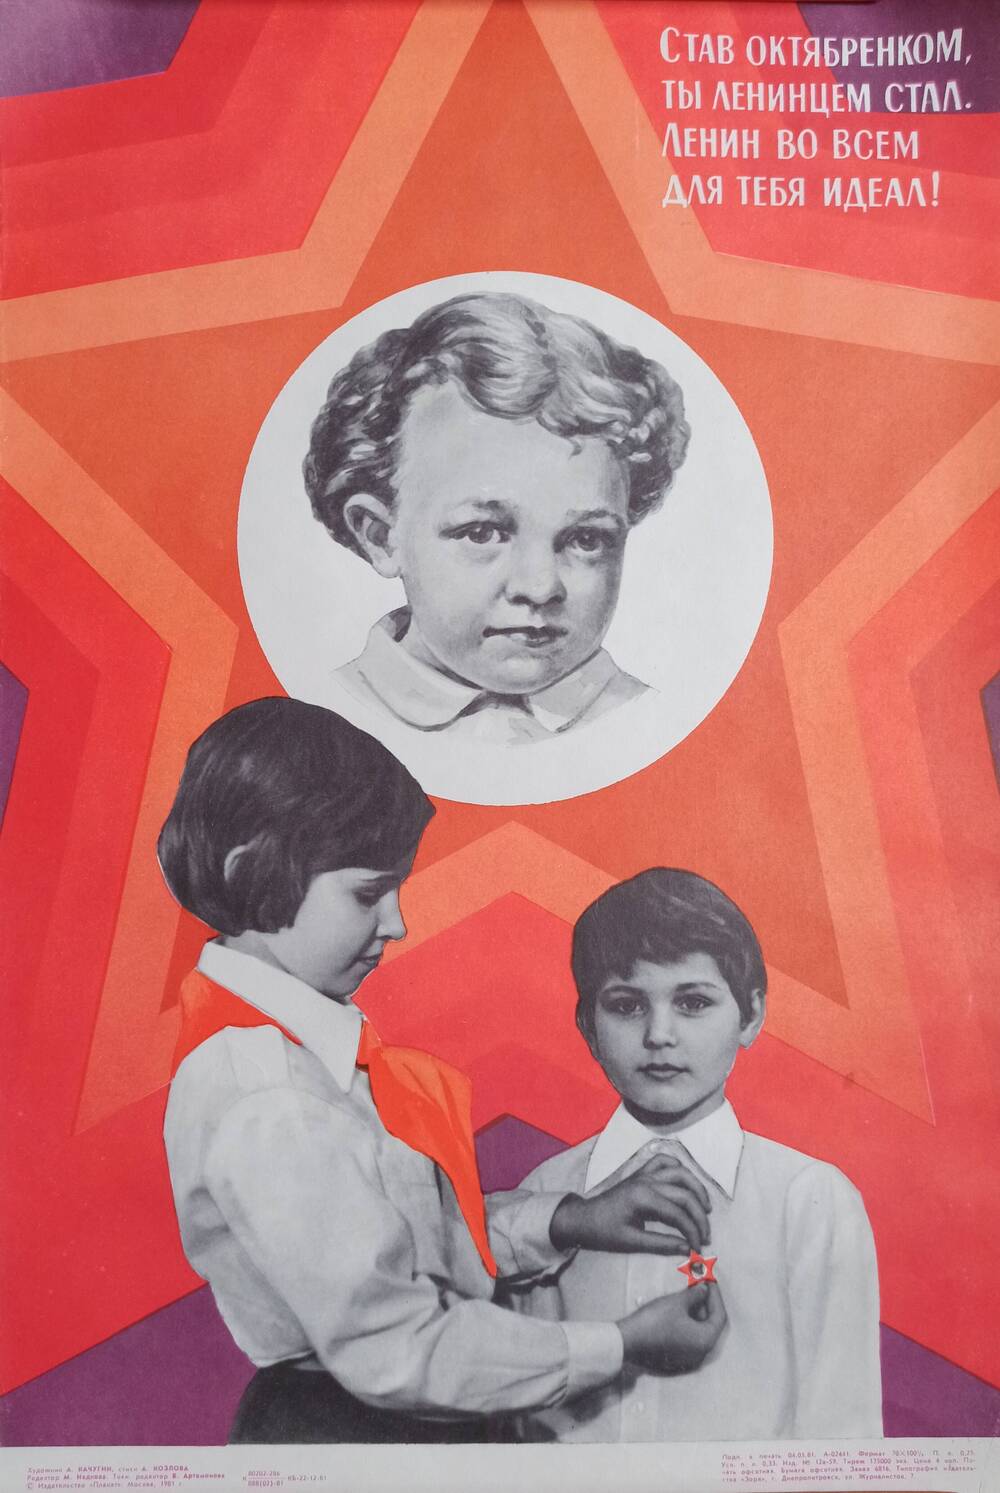 Плакат 
«Став октябренком, ты ленинцем стал. Ленин во
всем для тебя идеал!»